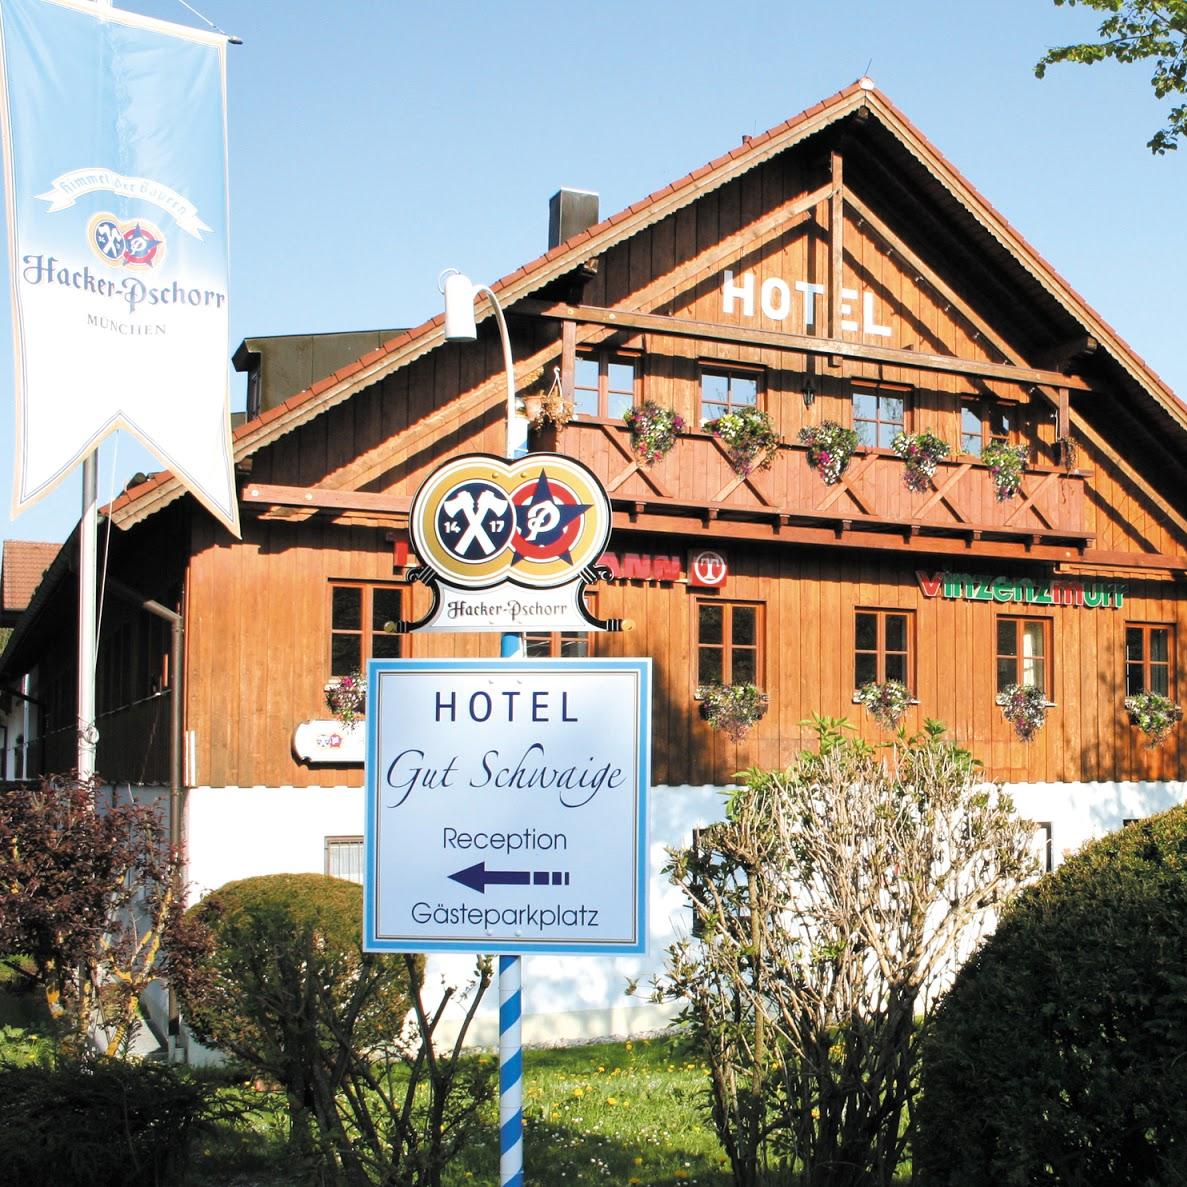 Restaurant "Hotel Gut Schwaige" in Schäftlarn